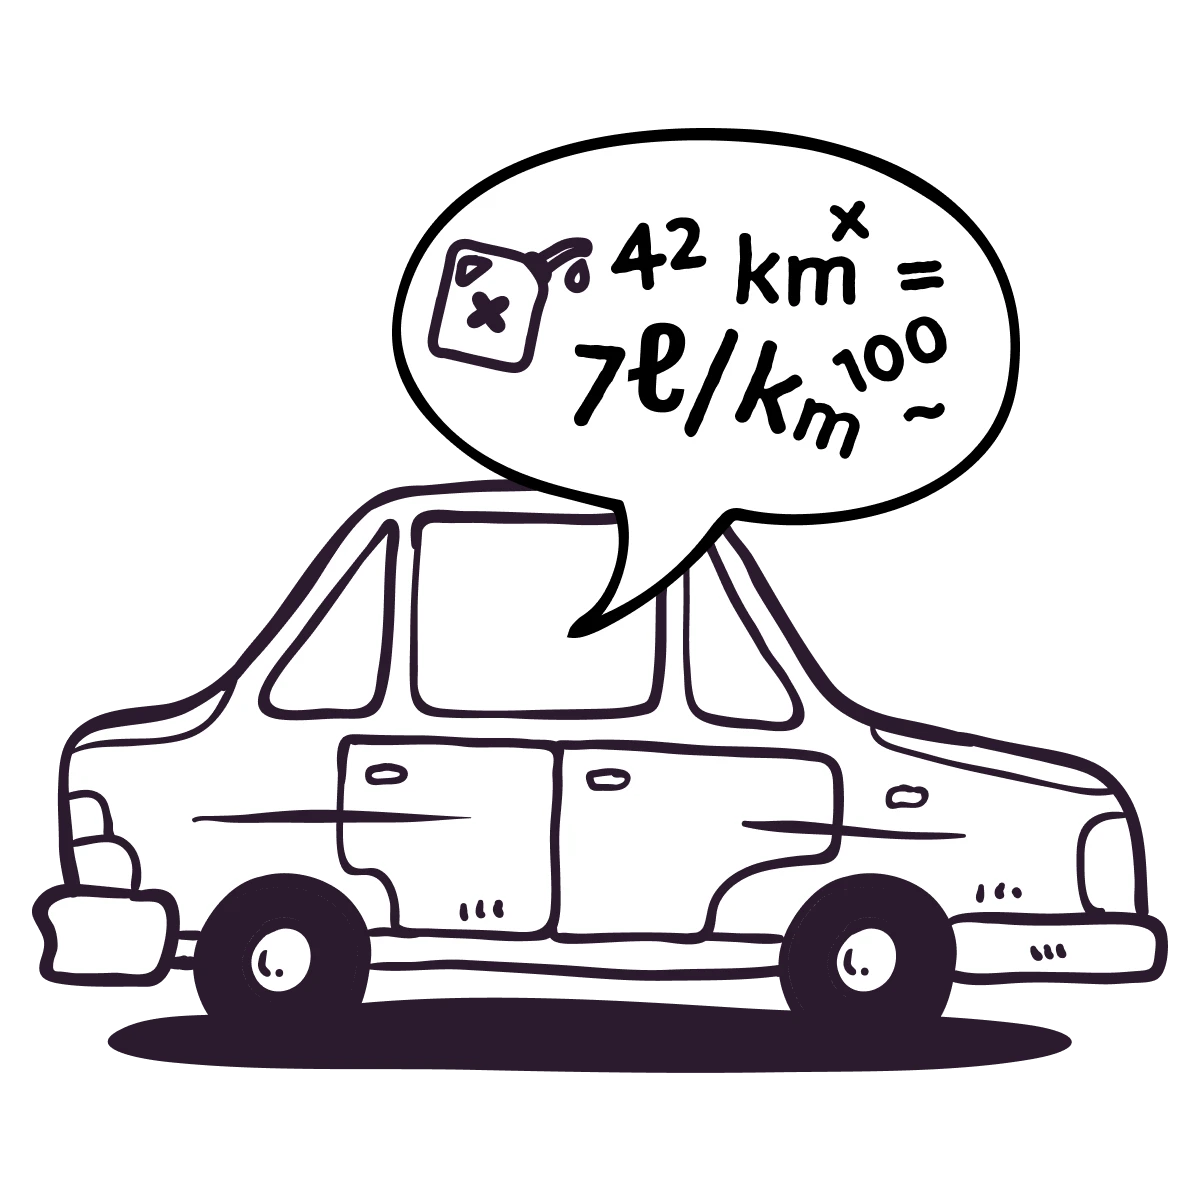 Ein Auto ist abgebildet mit mathematischen Formeln, das die Idee eines Fahrtkostenrechners suggeriert.